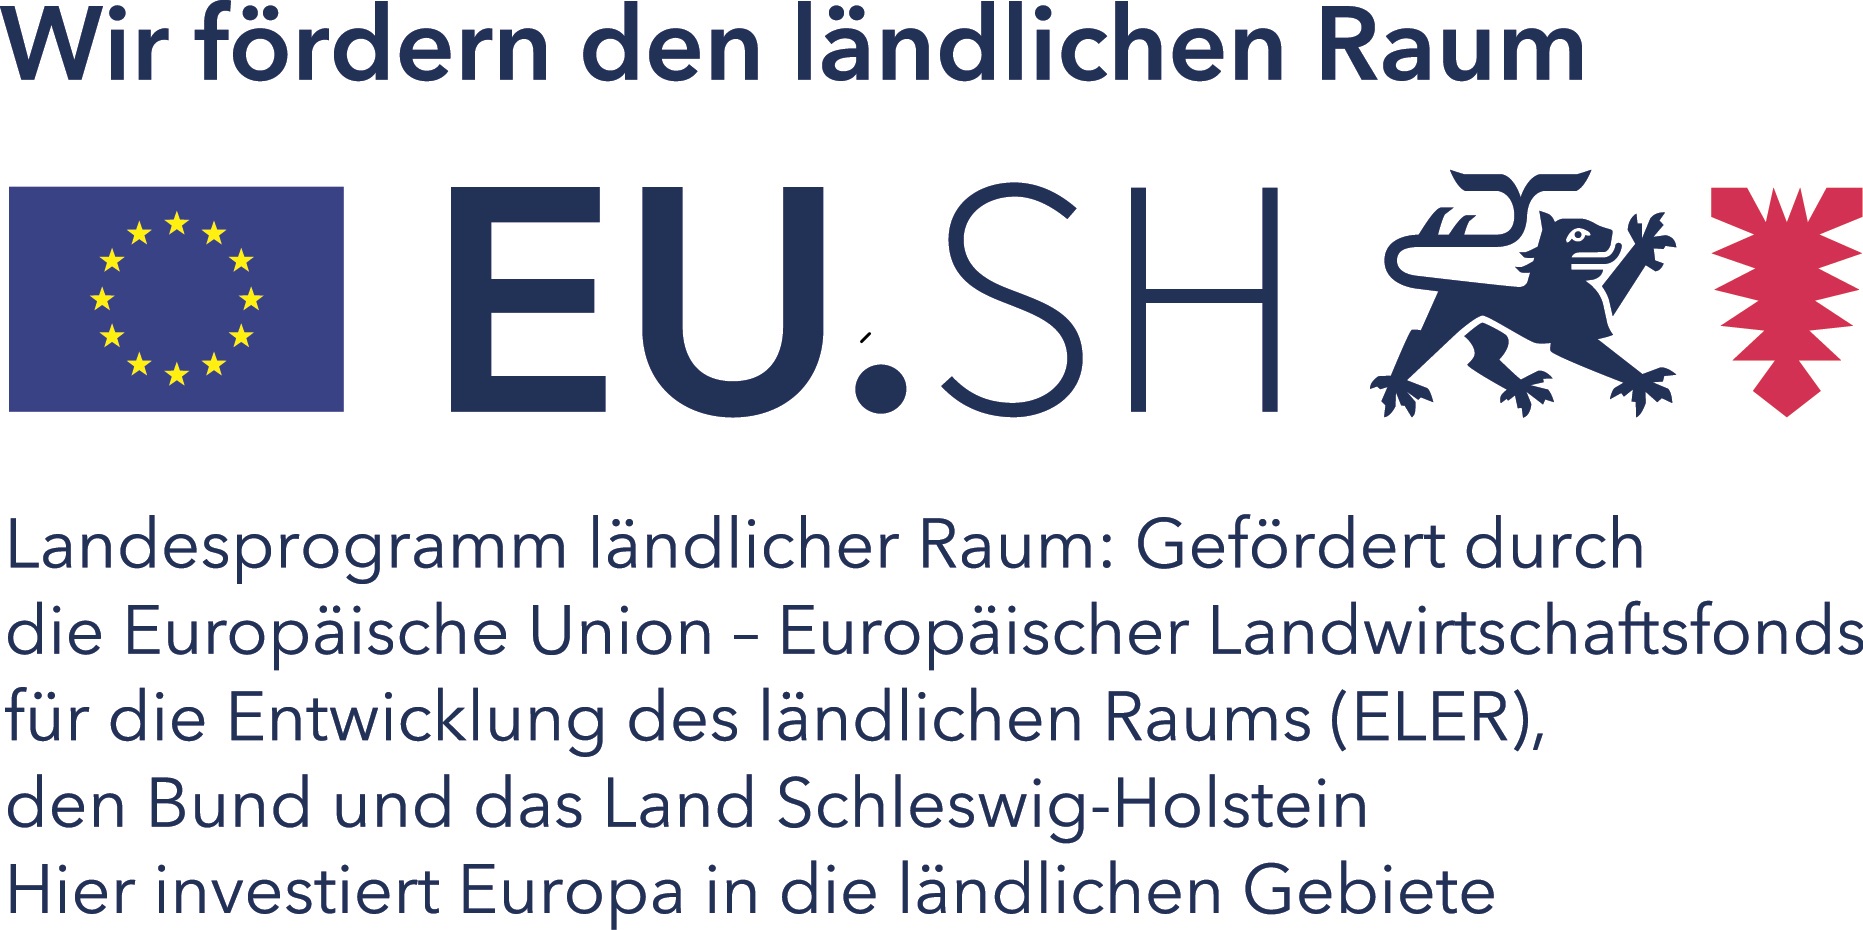 ELER+Bund+Land Logo2